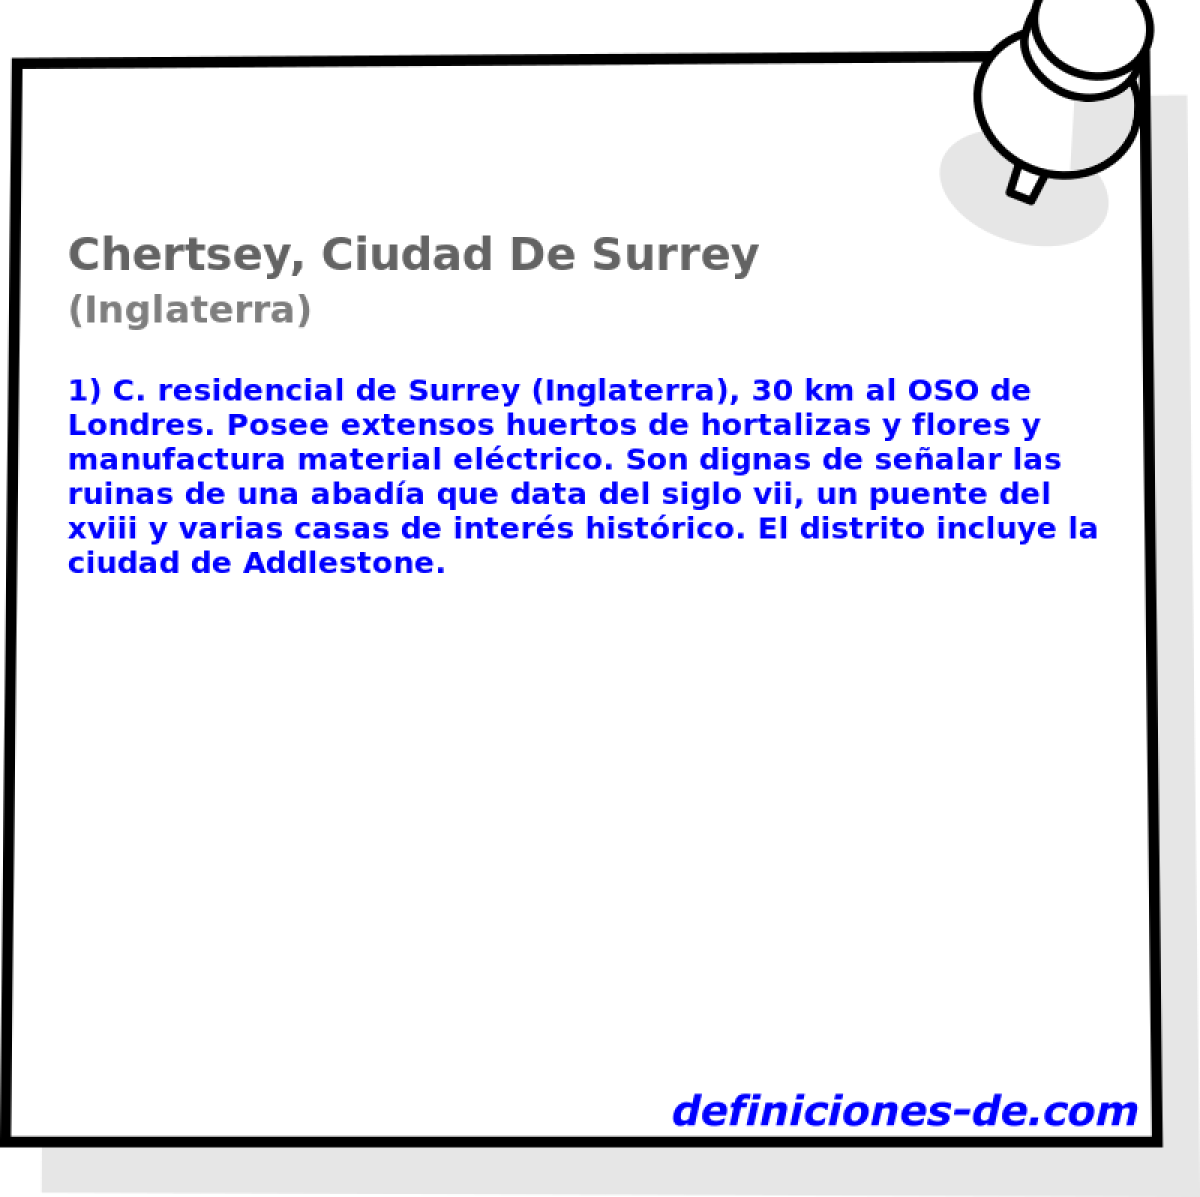 Chertsey, Ciudad De Surrey (Inglaterra)